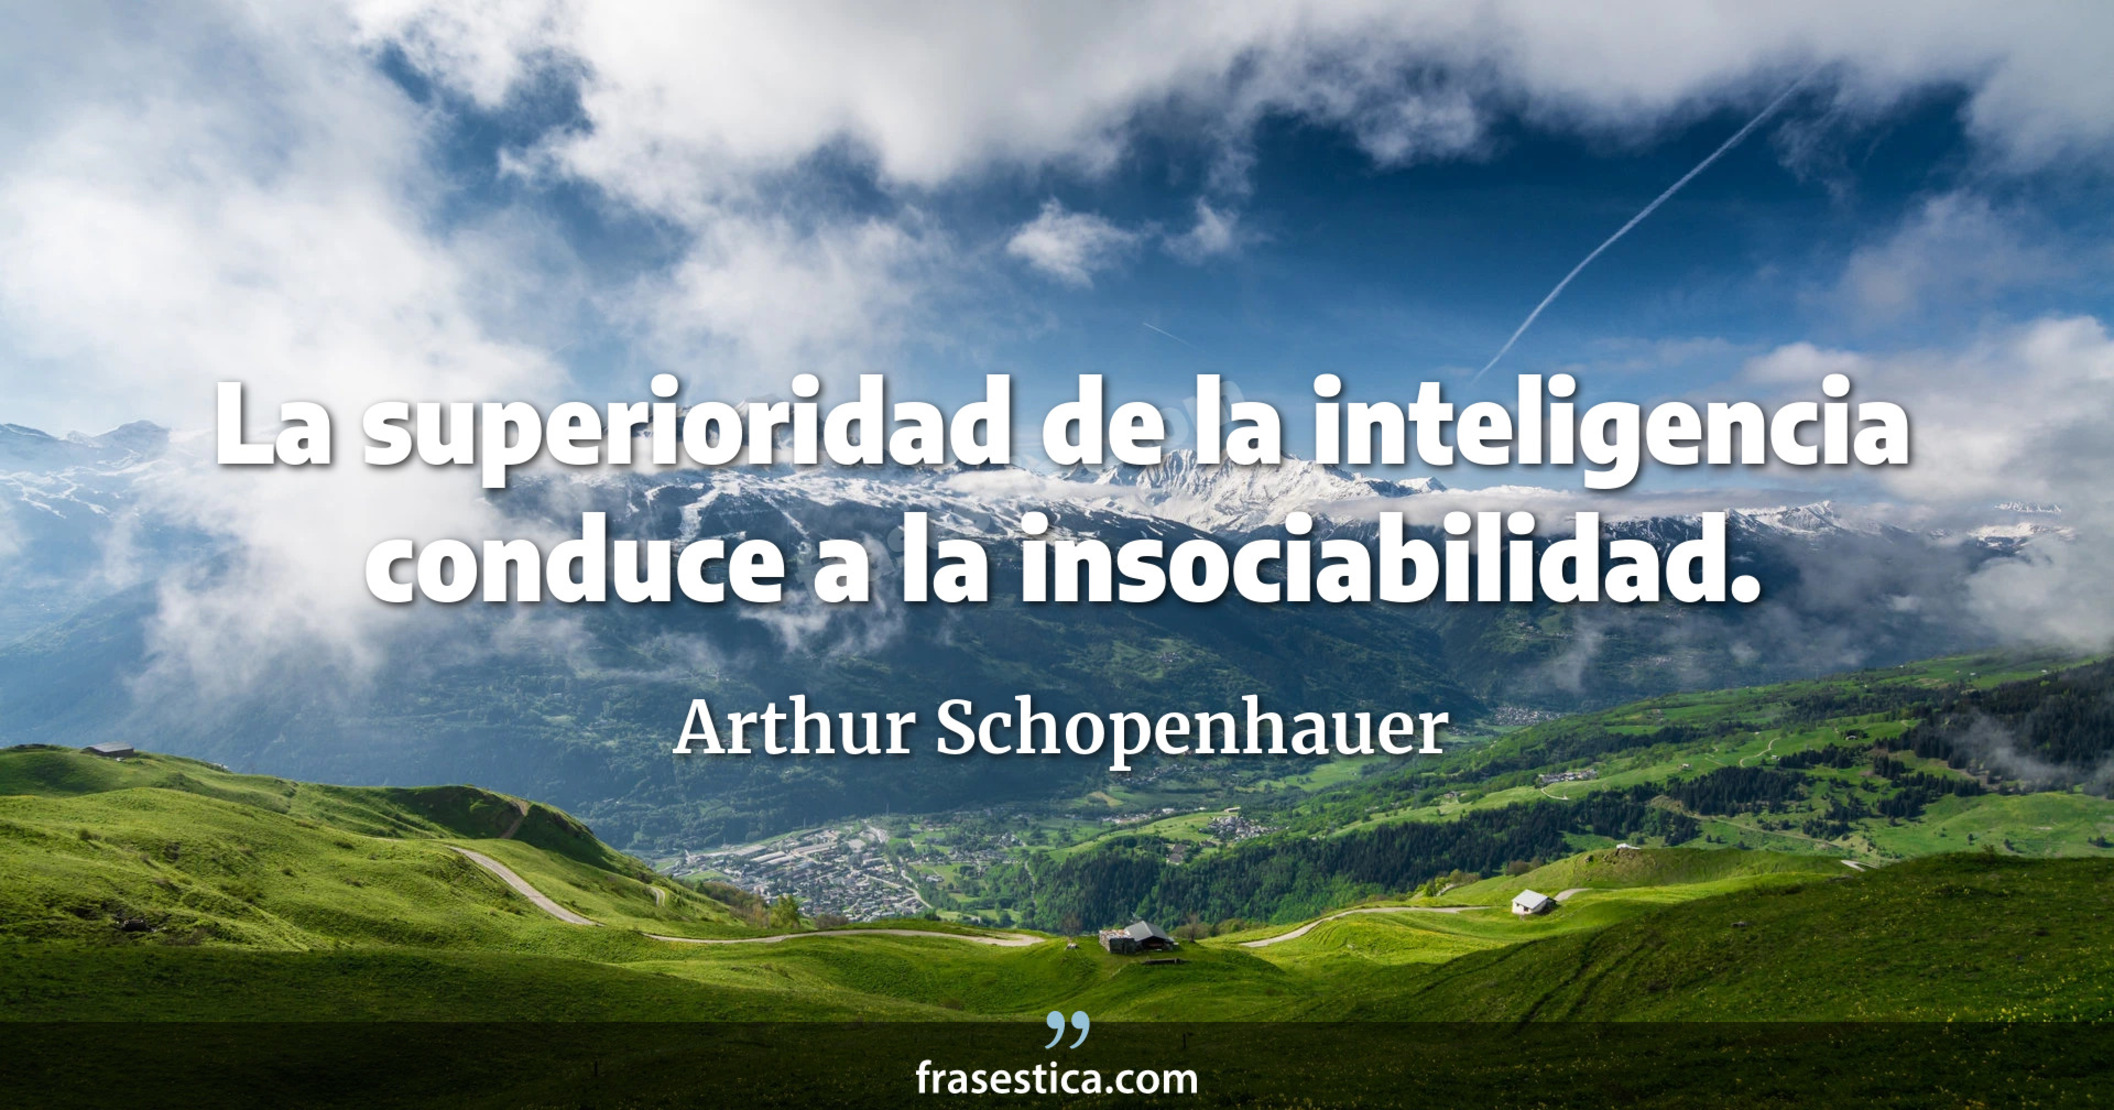 La superioridad de la inteligencia conduce a la insociabilidad. - Arthur Schopenhauer